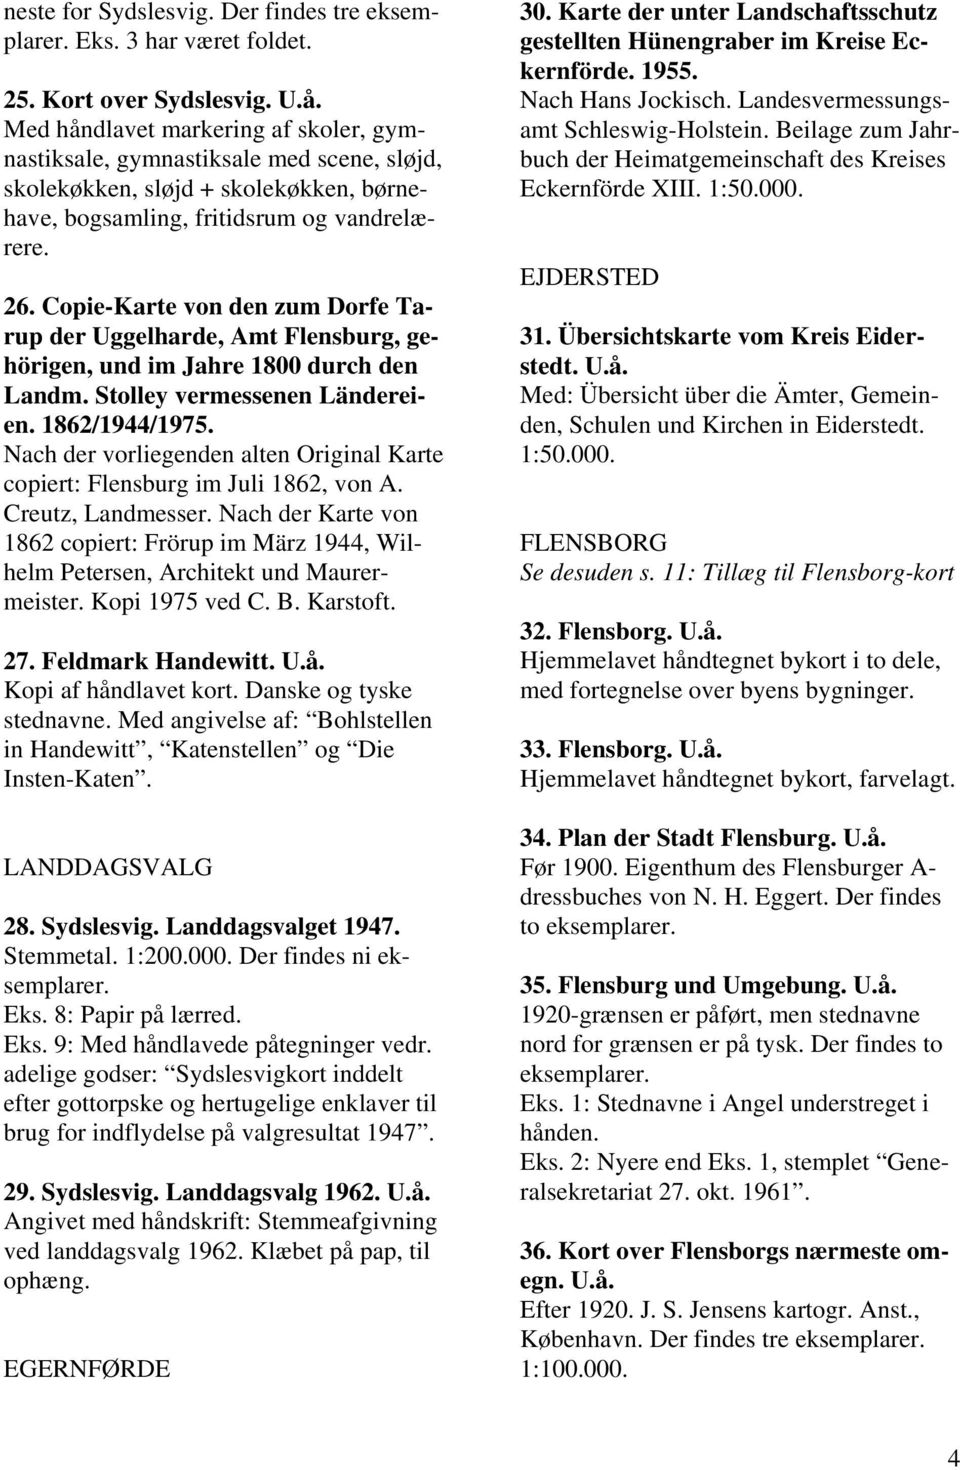 Copie-Karte von den zum Dorfe Tarup der Uggelharde, Amt Flensburg, gehörigen, und im Jahre 1800 durch den Landm. Stolley vermessenen Ländereien. 1862/1944/1975.